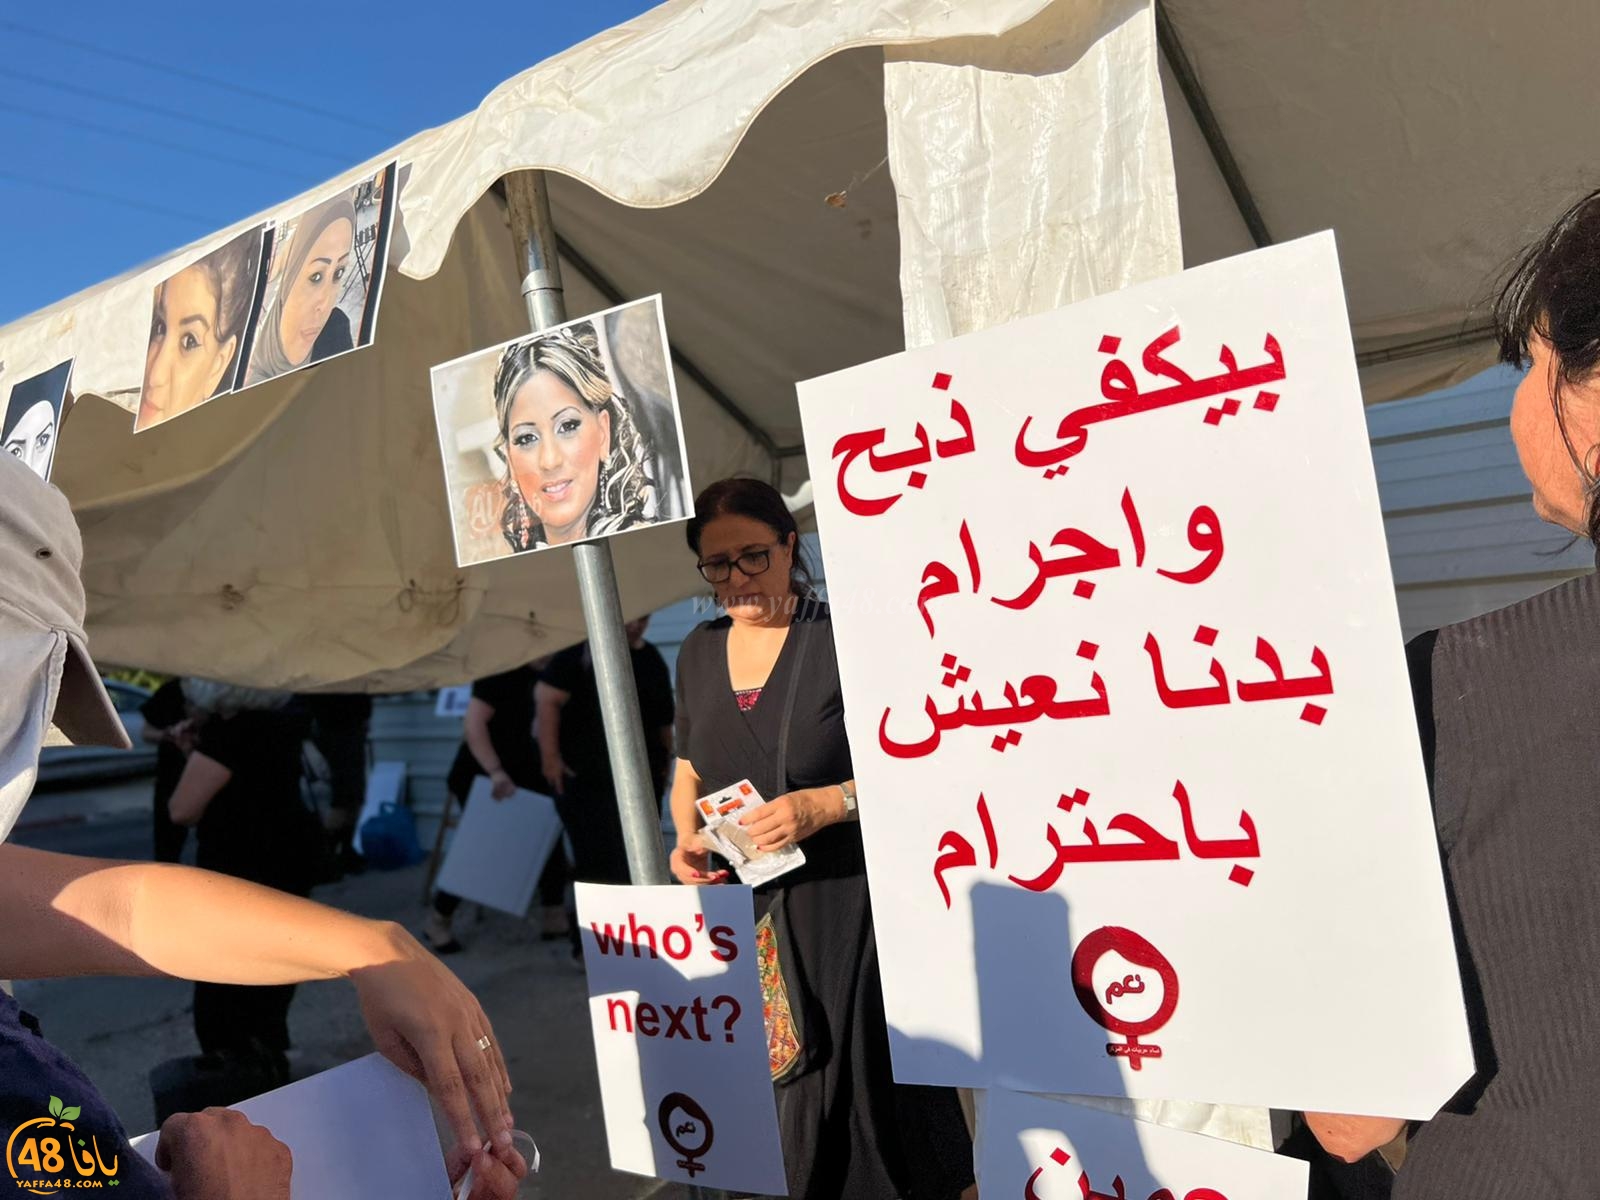 اللد: وقفة احتجاجية أمام محطة الشرطة ضد قتل النساء